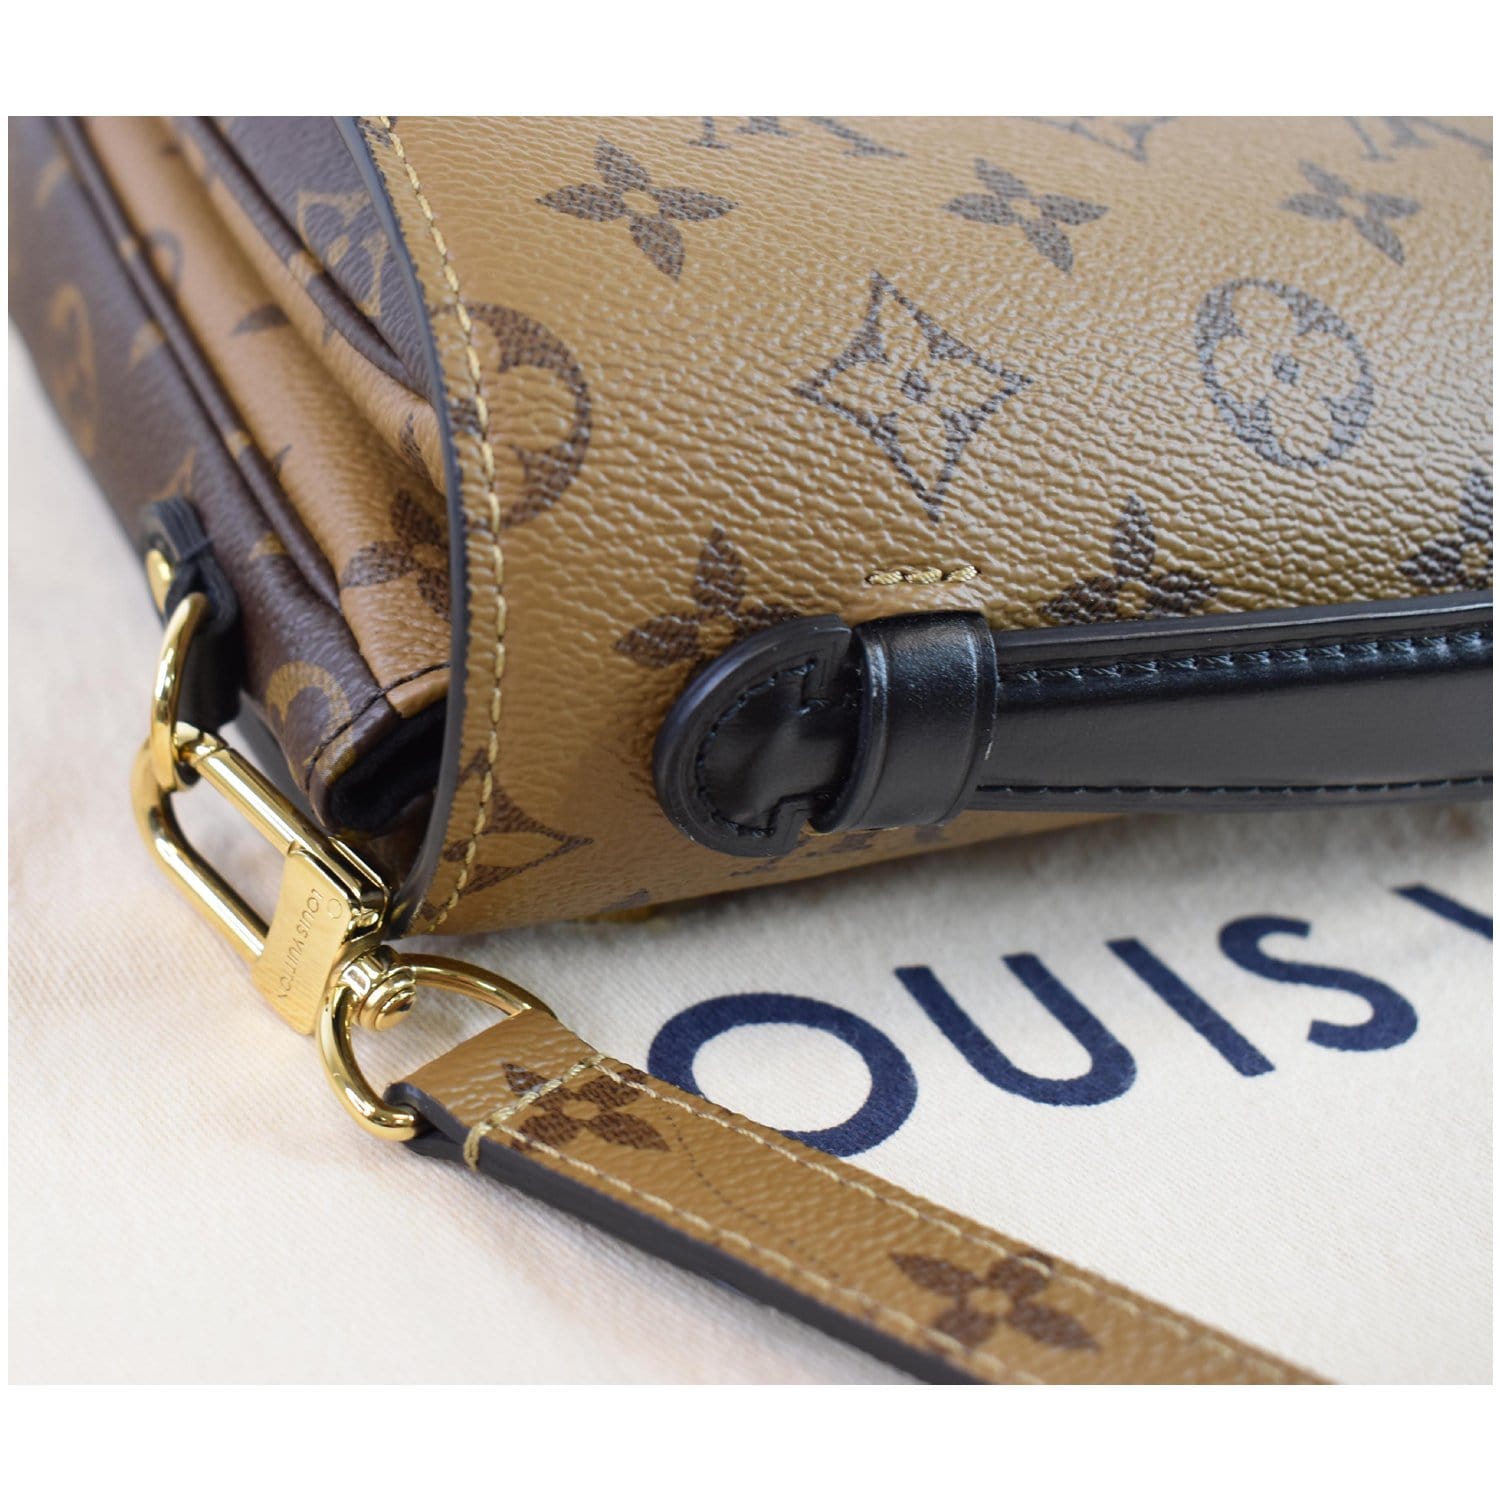 Louis Vuitton Pochette Métis M44876 Brown Monogram Reverse Coated Canvas  Bag